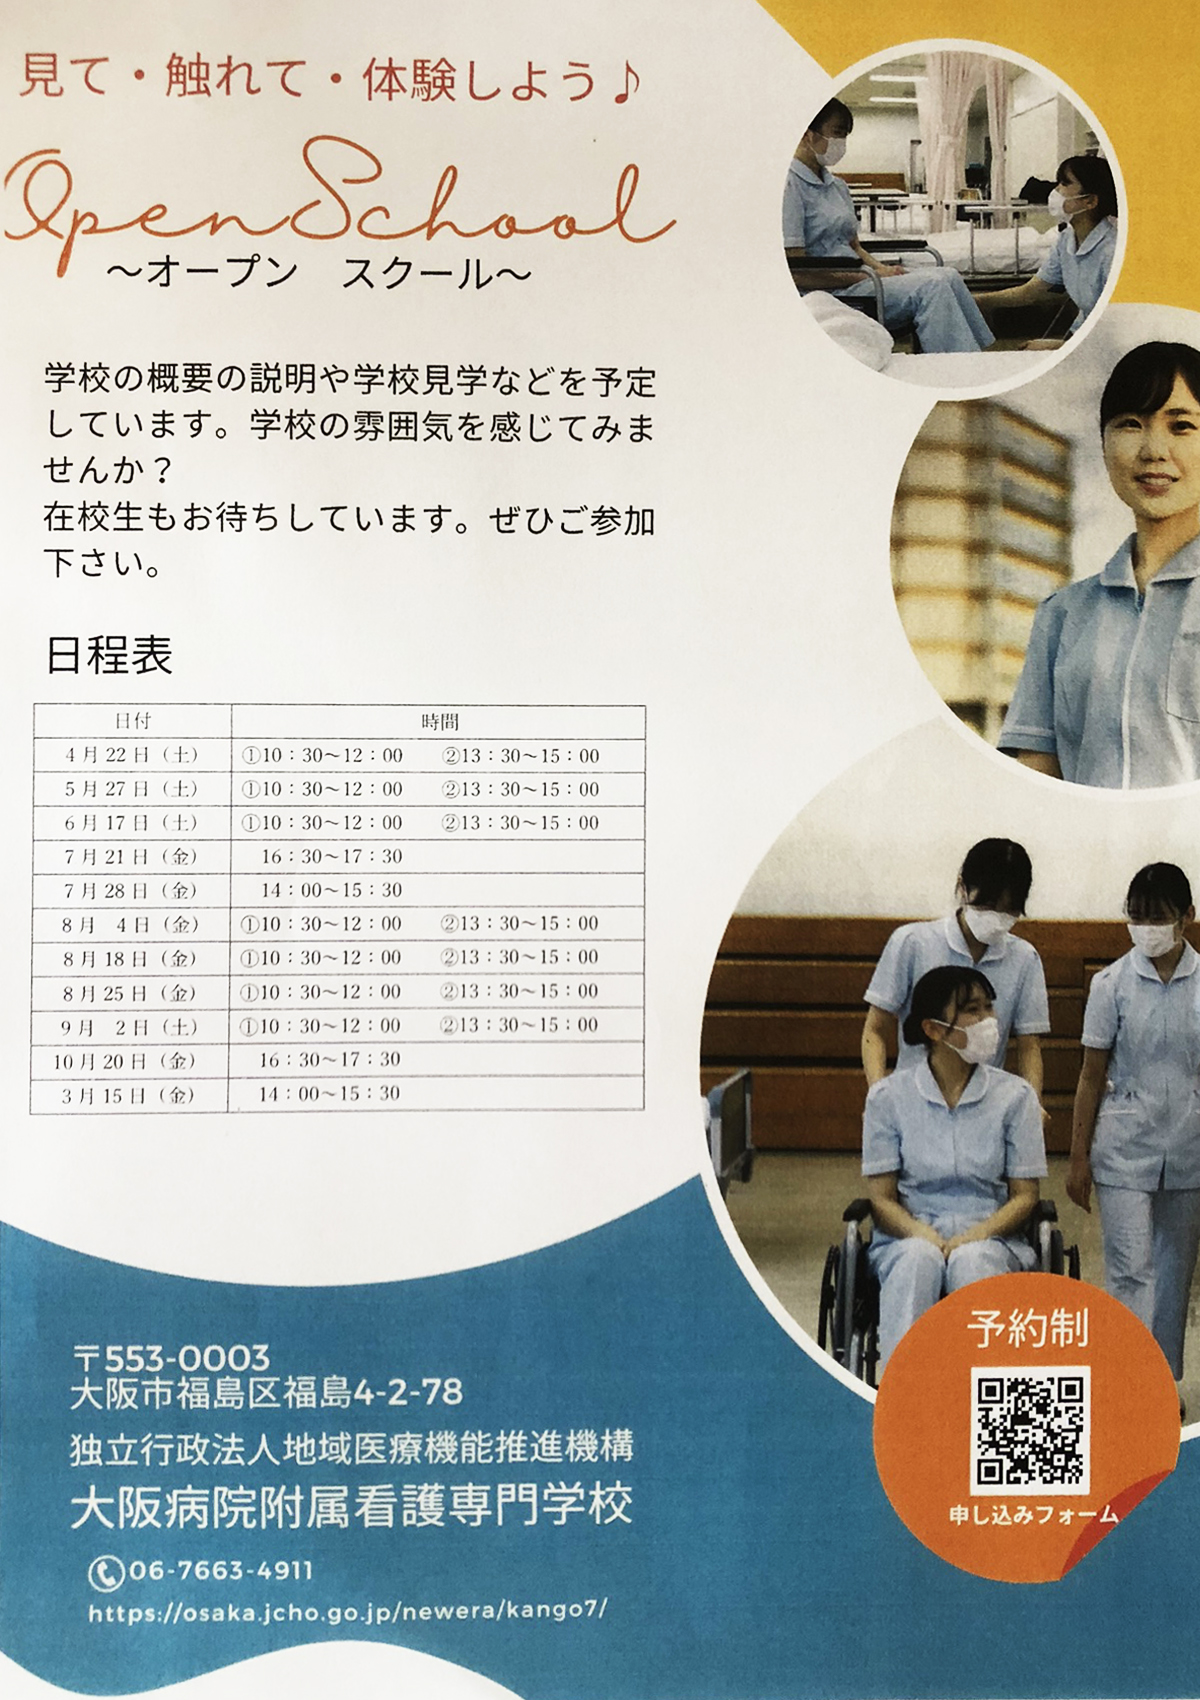 大阪病院附属看護専門学校オープンスクール